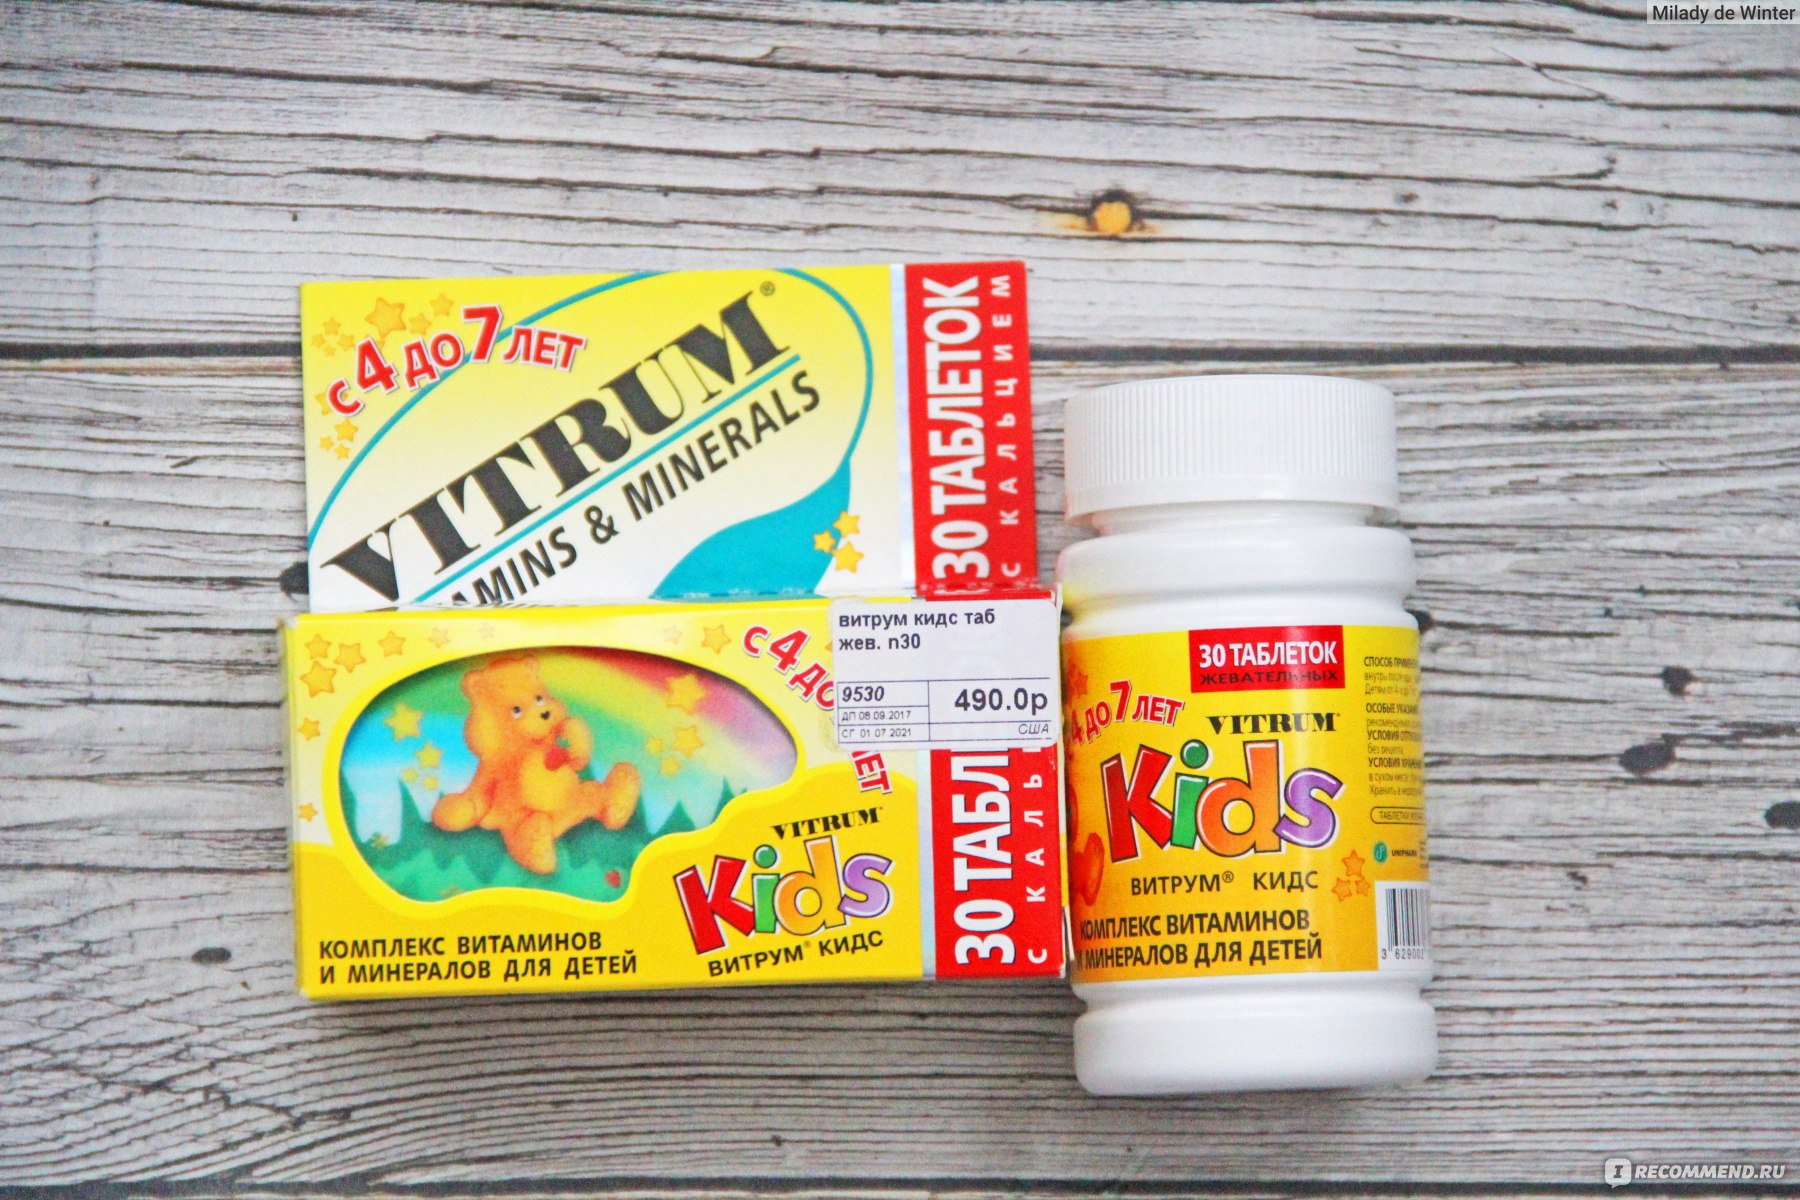 Витрум кидс пастилки жевательные отзывы. Витамины витрум для детей от 2 лет для иммунитета. Витамины для детей от 1 для иммунитета витрум. Витрум витамины для детей 5 лет. Витамины витрум с железом для детей 3 года.